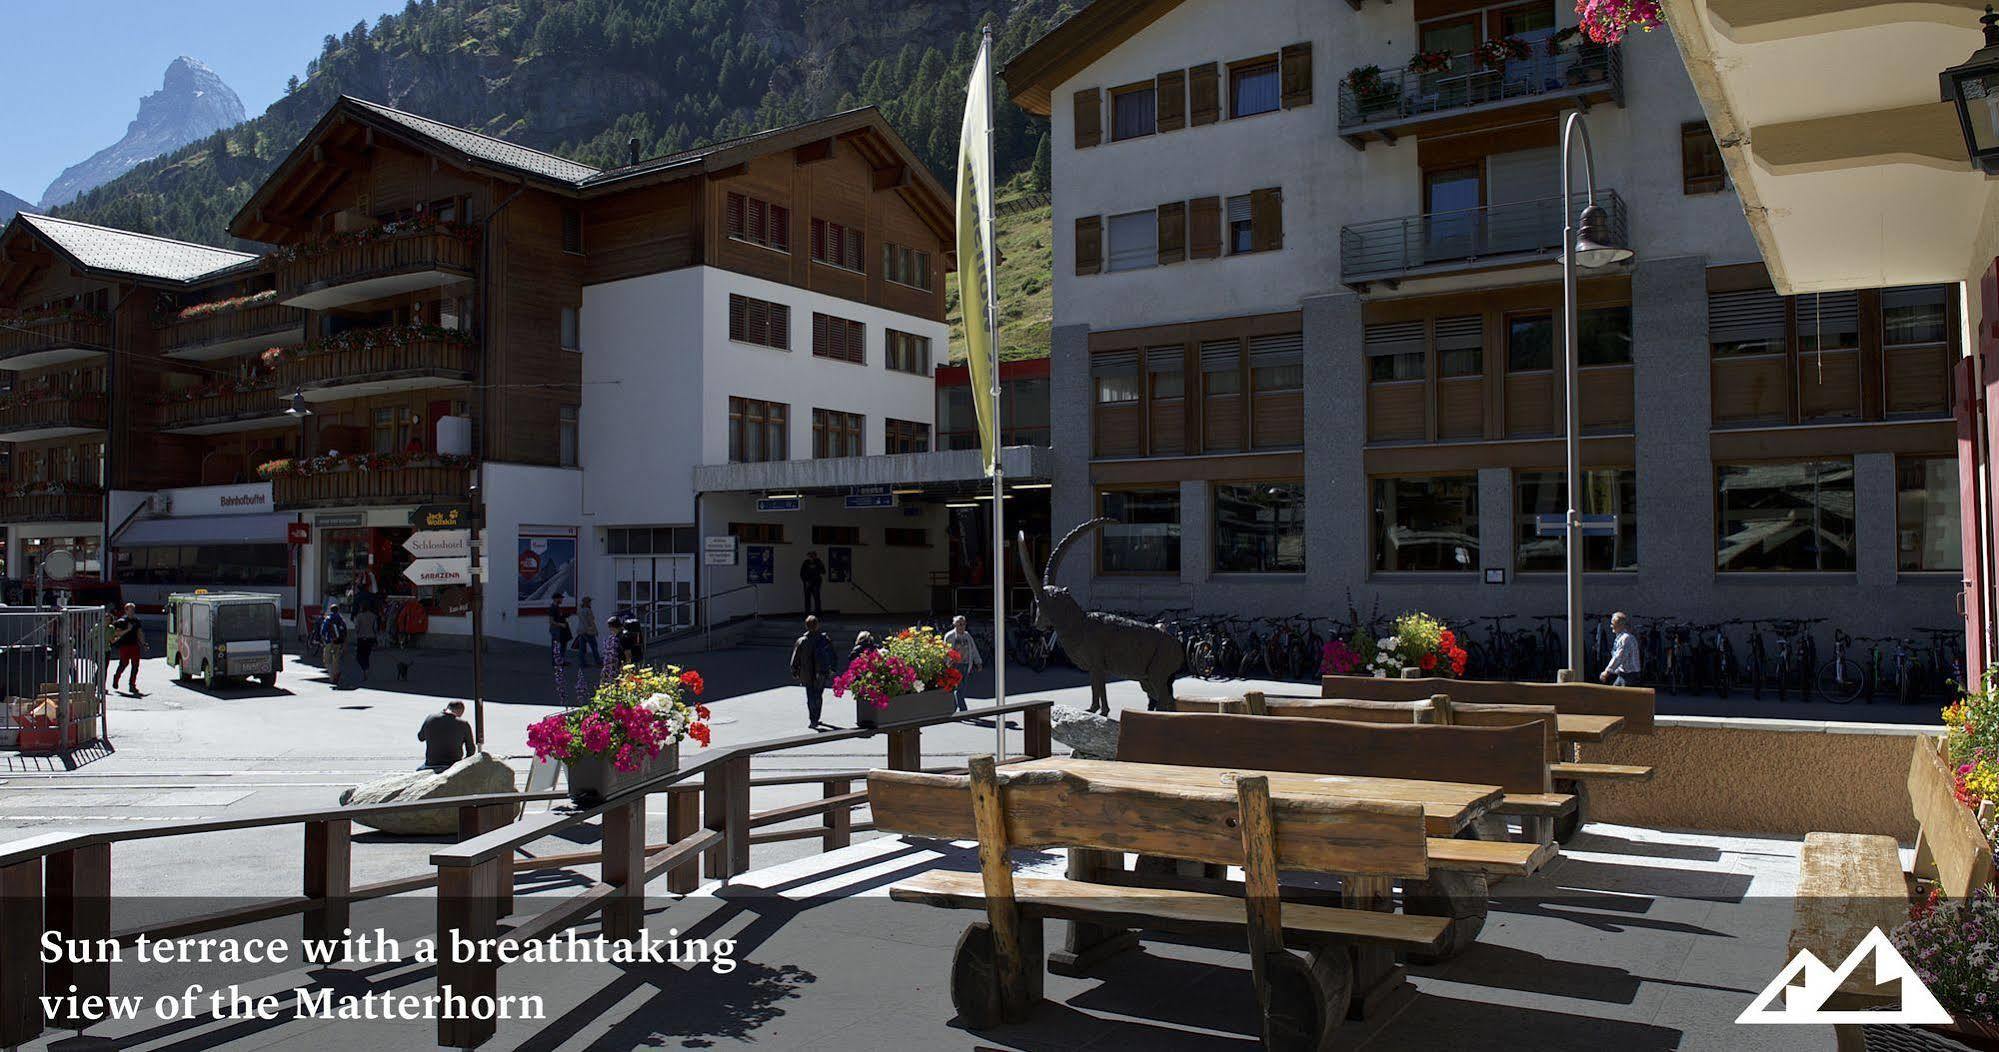 Hotel Bahnhof Zermatt Bagian luar foto